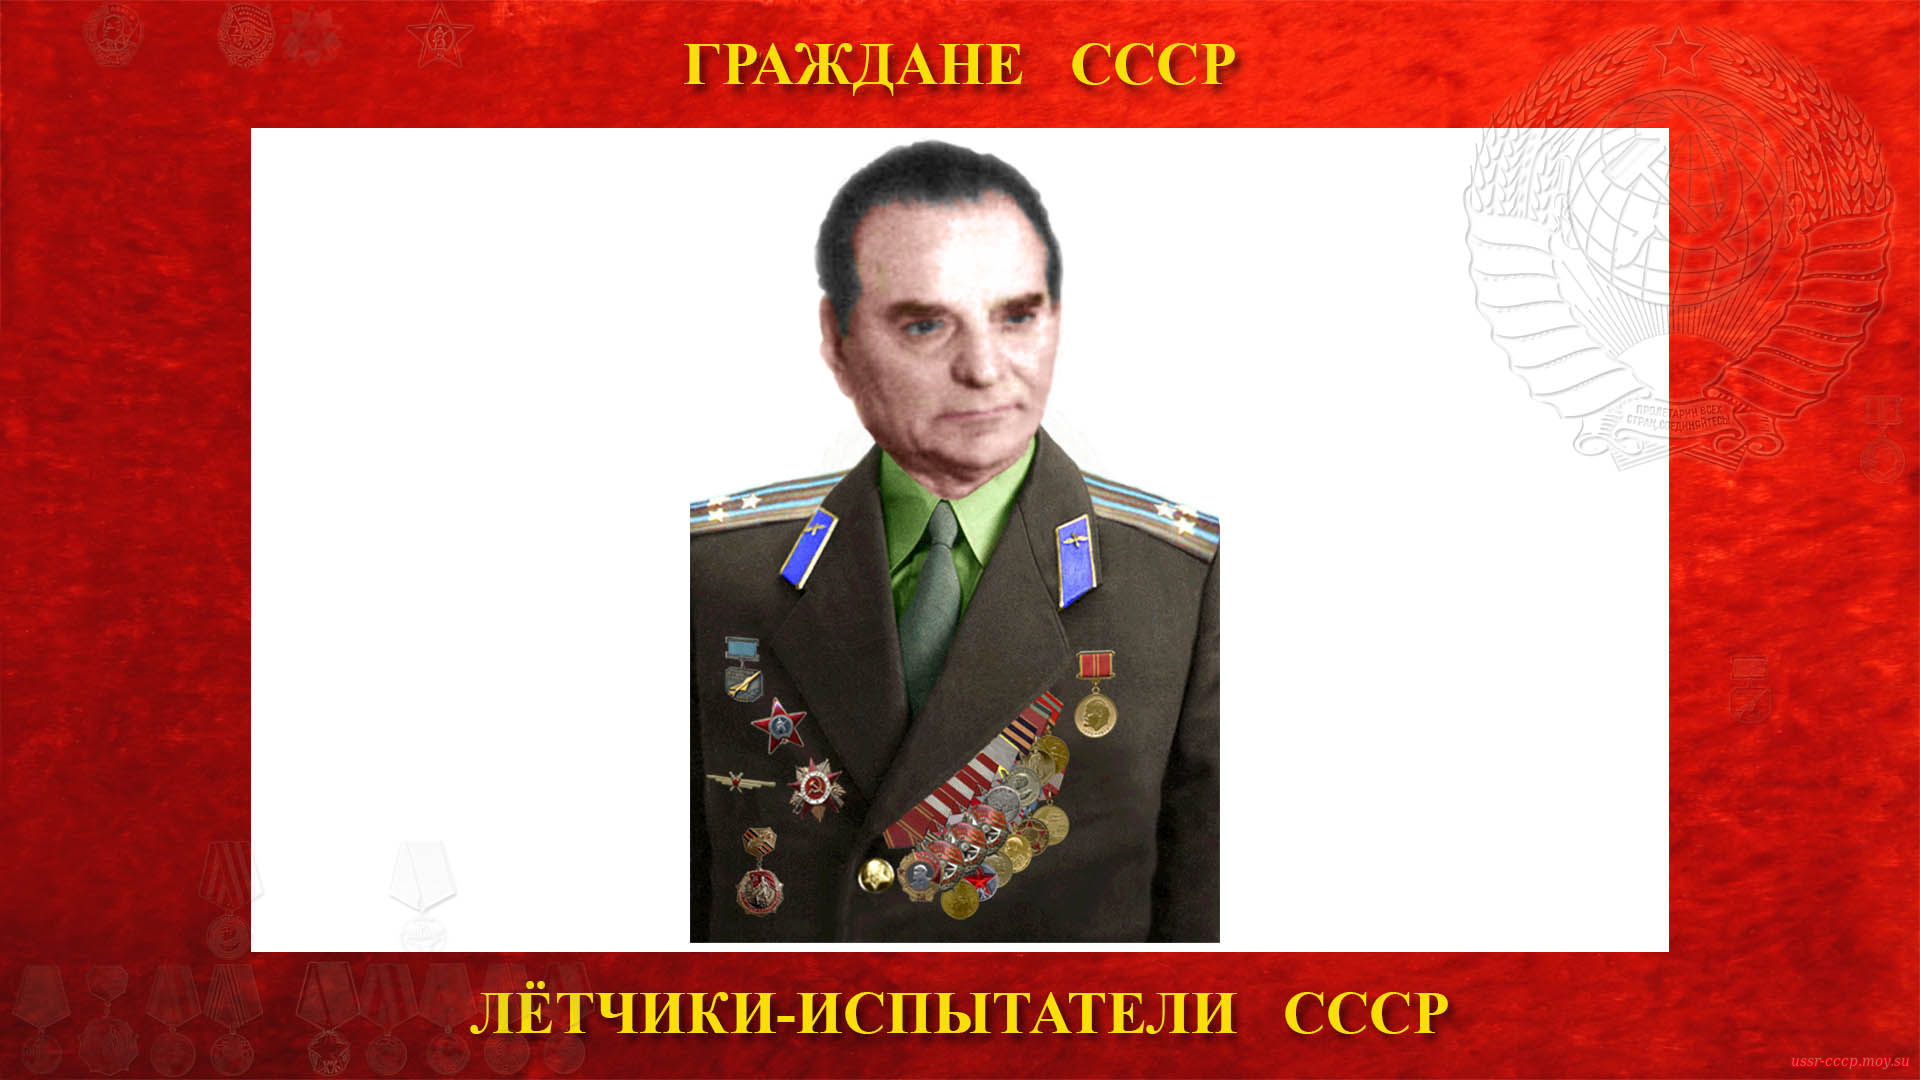 Коробко Григорий Яковлевич — Советский лётчик-испытатель СССР — Полковник СССР